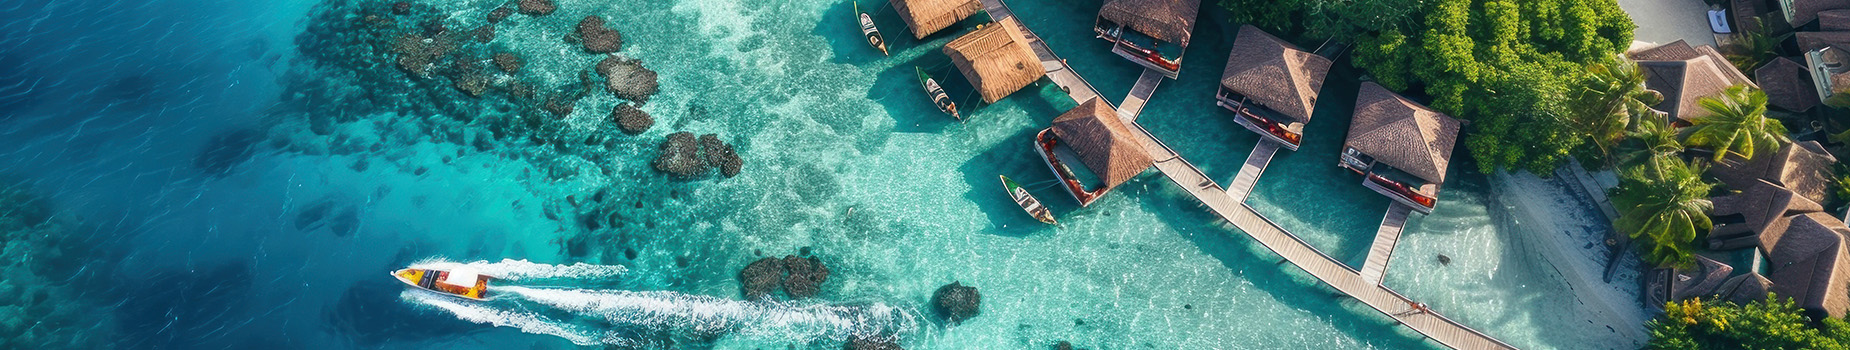 Tropische vakantiebestemming bungalows op het water